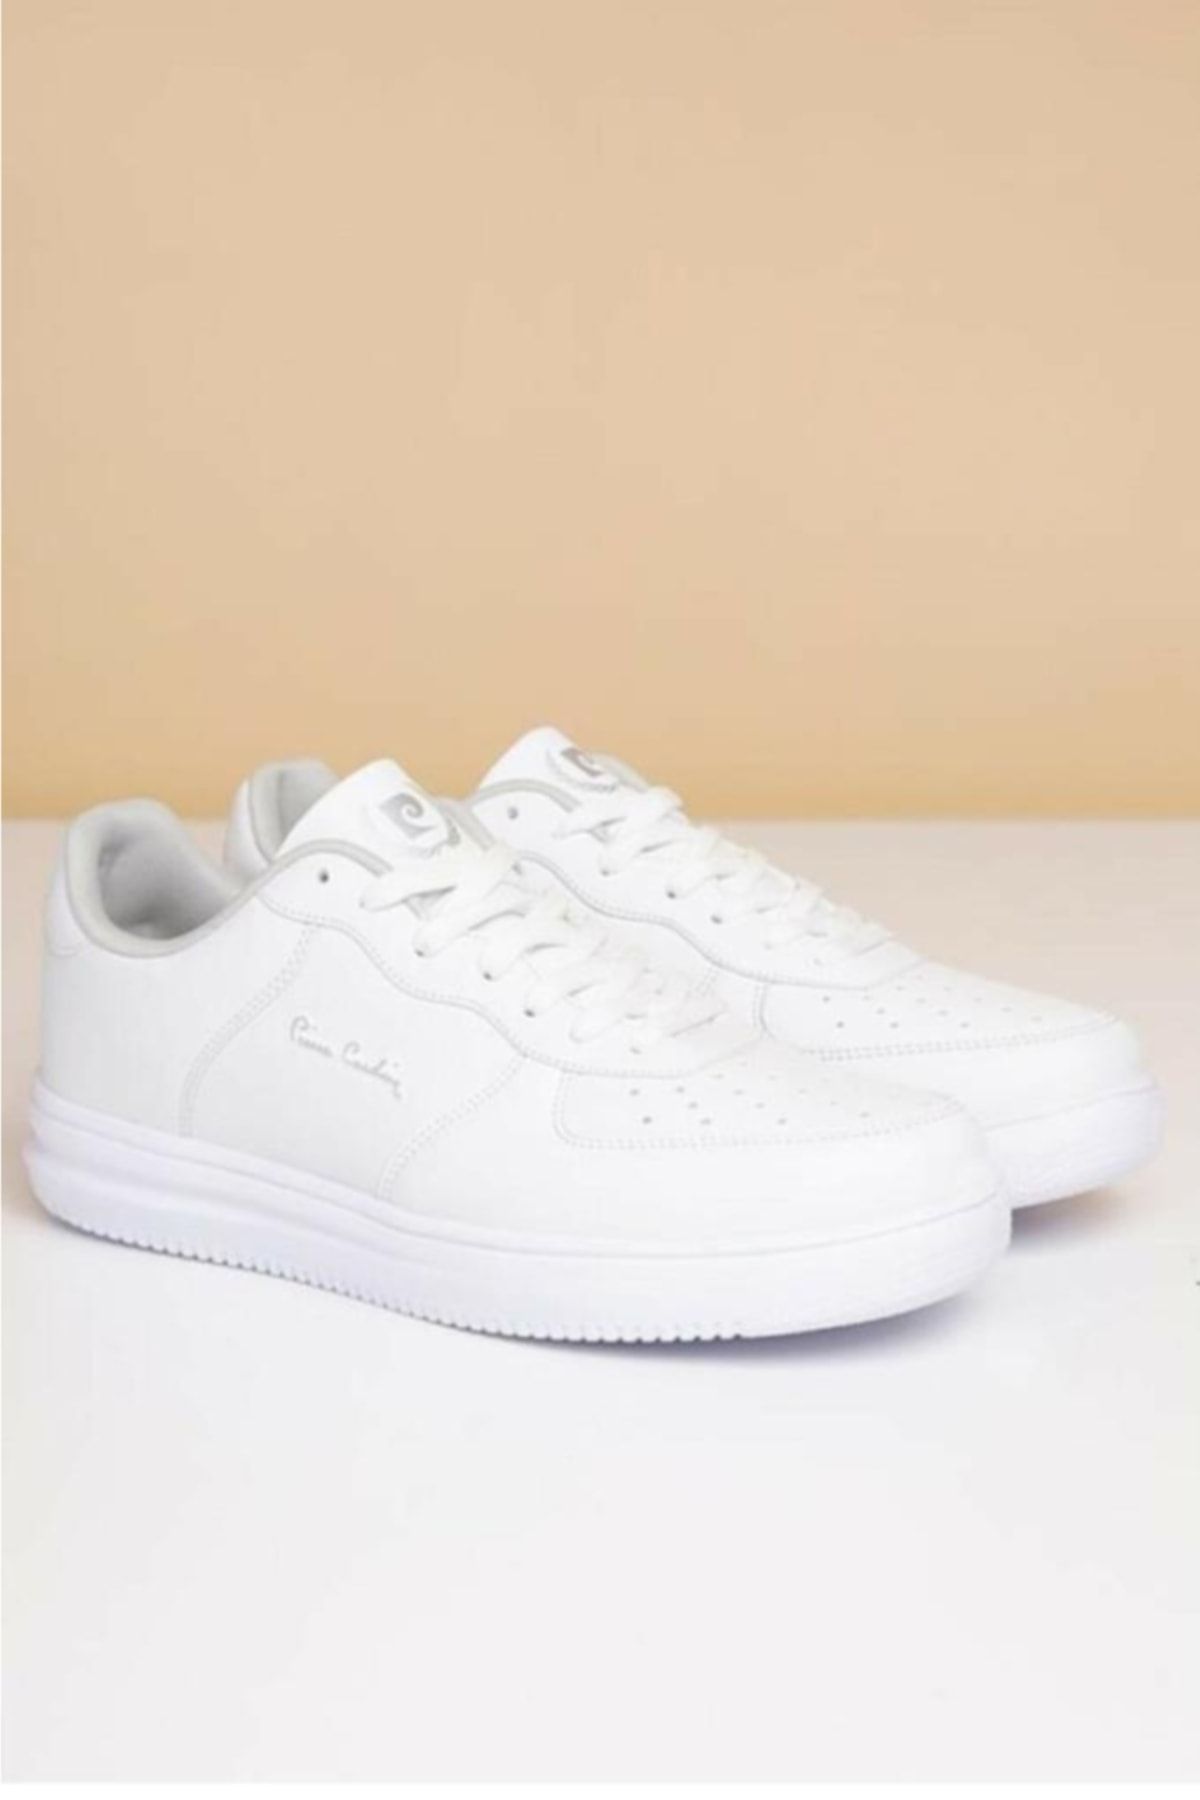 Pierre Cardin Pcs-10155 Erkek Sneaker Ayakkabı Beyaz 40-45